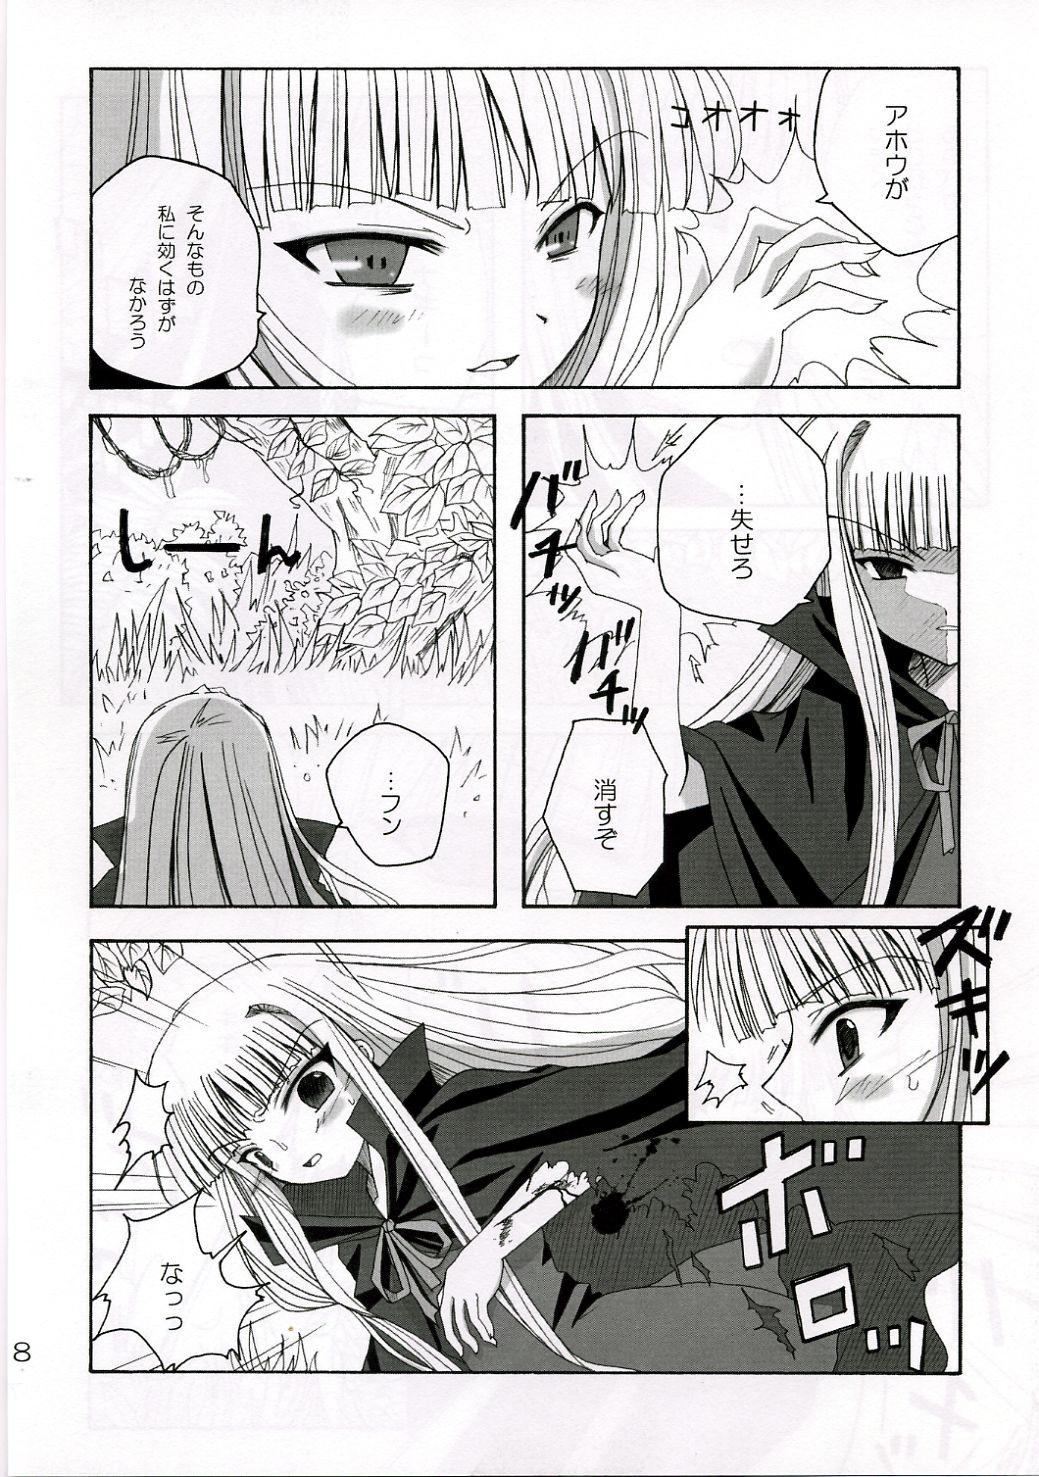 Stepfather SWEET PAIN - Mahou sensei negima Sexy Whores - Page 7